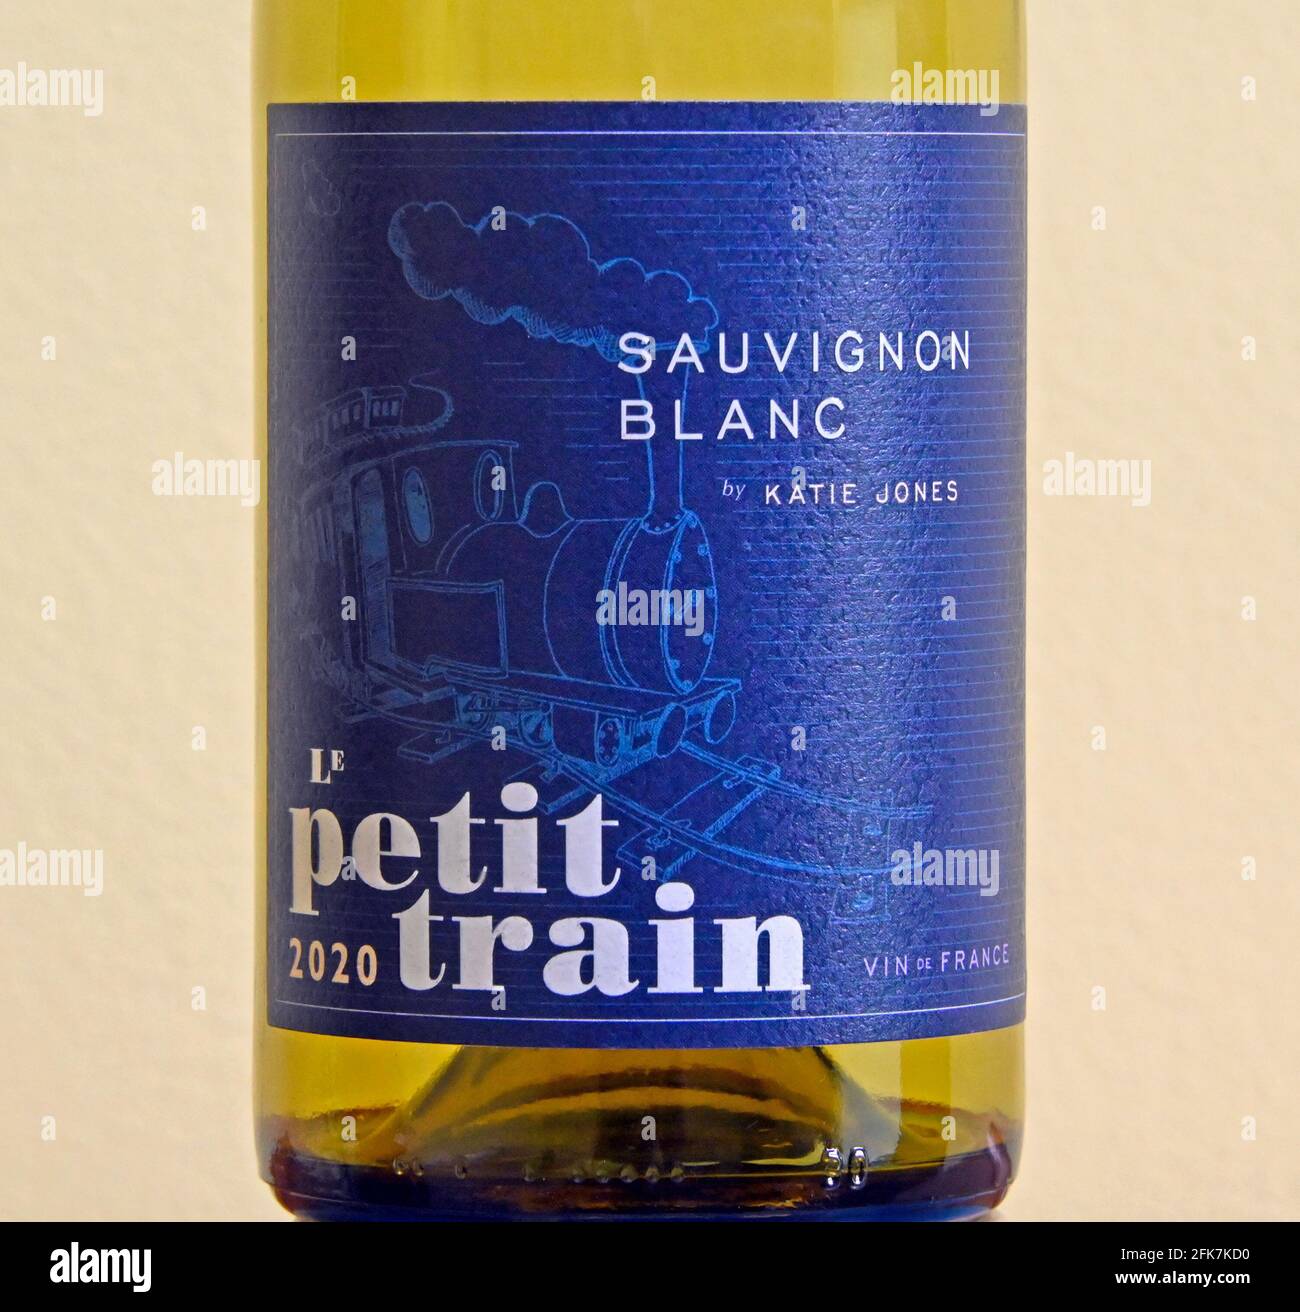 Etichetta del vino. Le Petit Train. Sauvignon Blanc di Katie Jones. VIN de France. 2020. Foto Stock